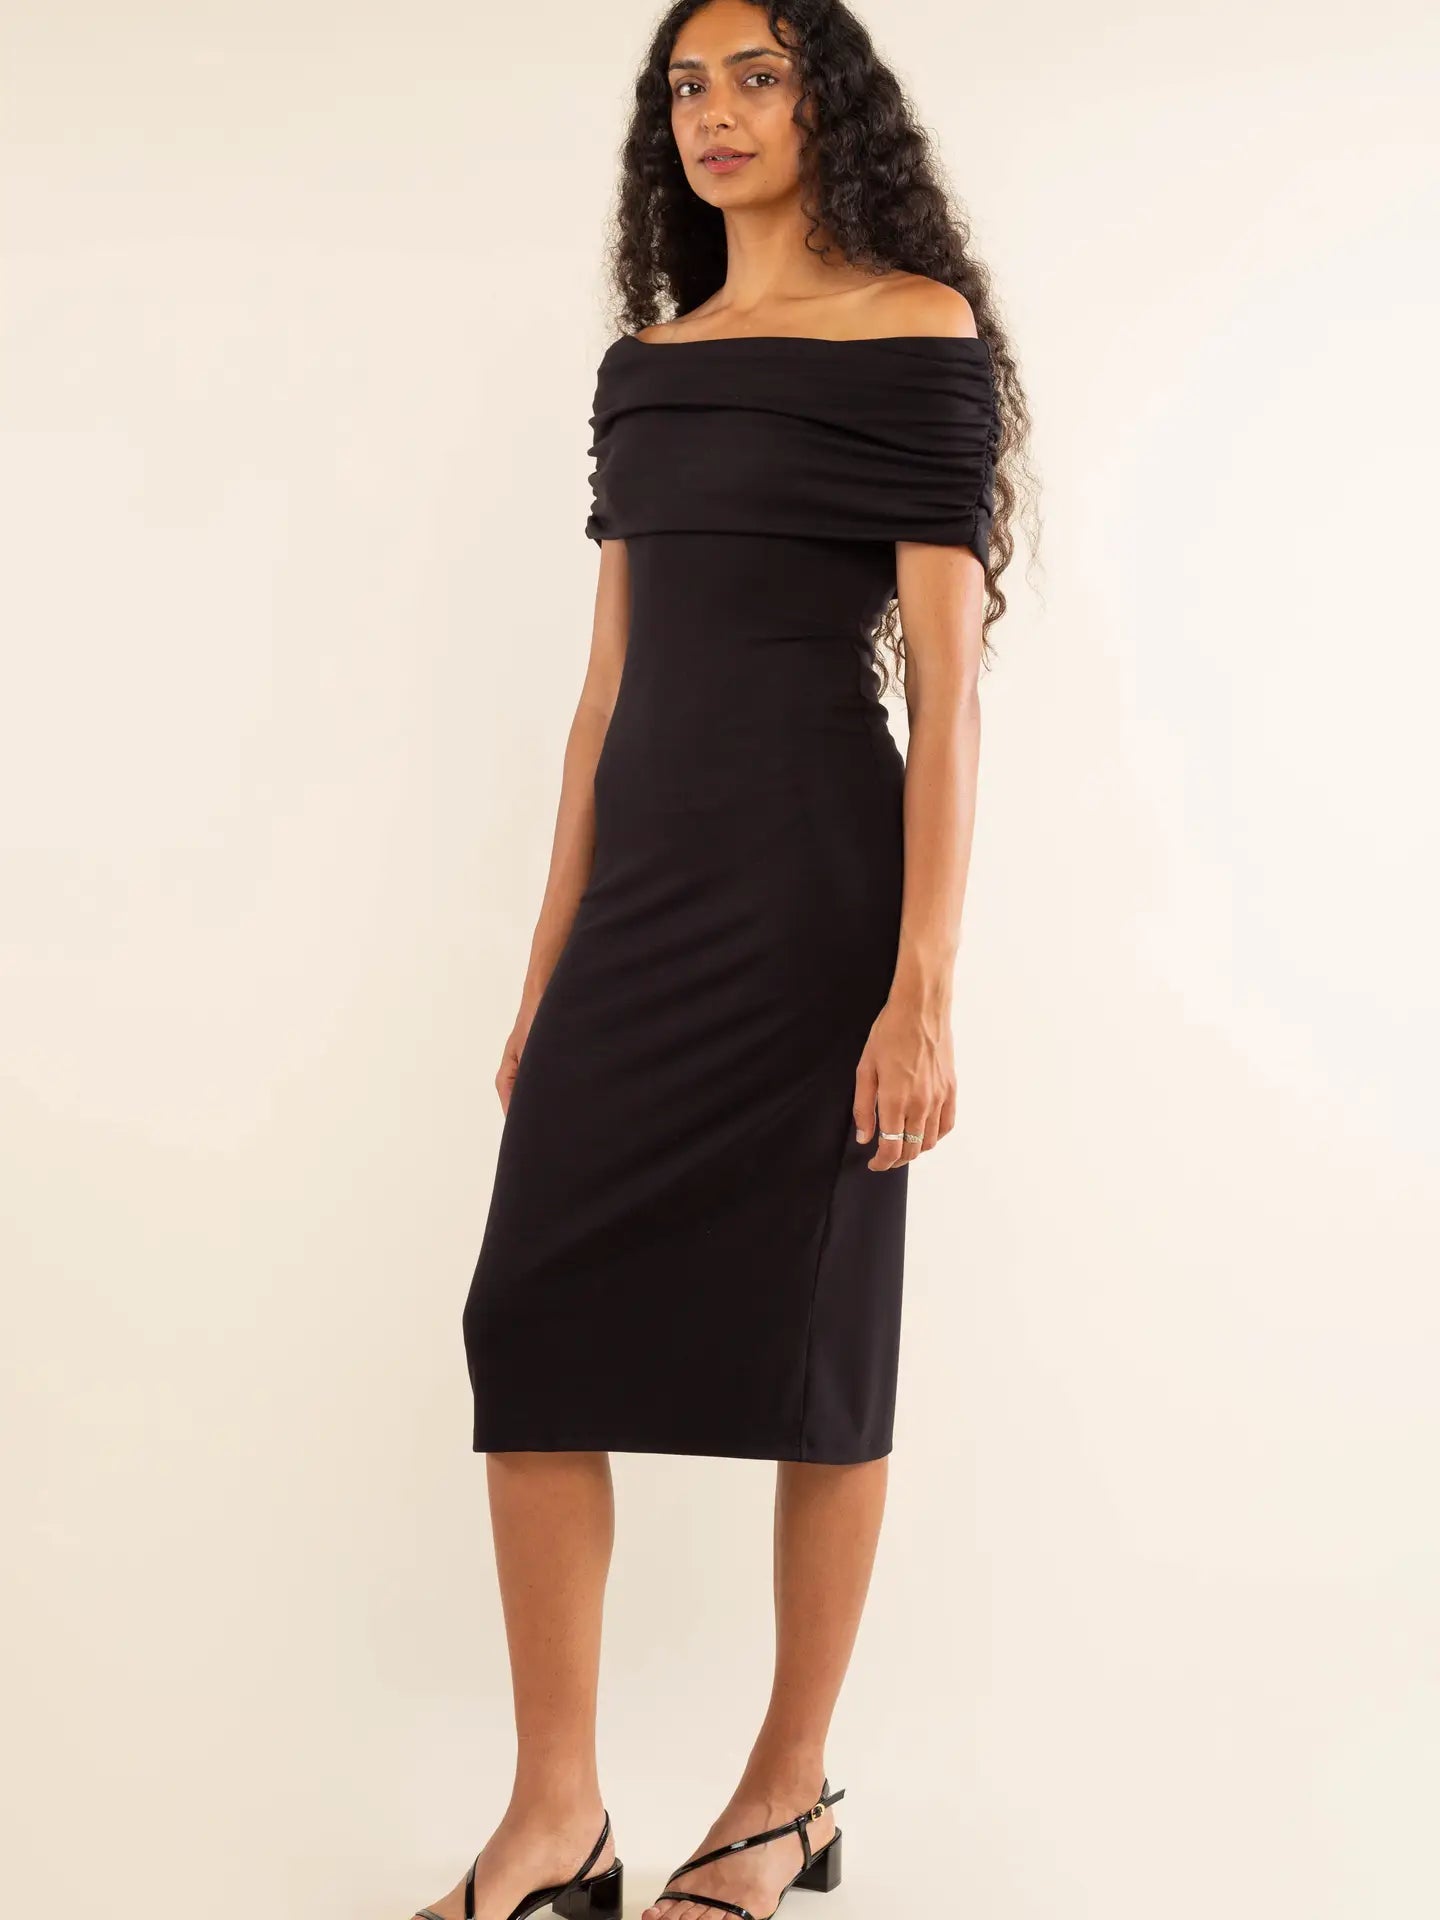 Cora Off-Shoulder Dress in Black